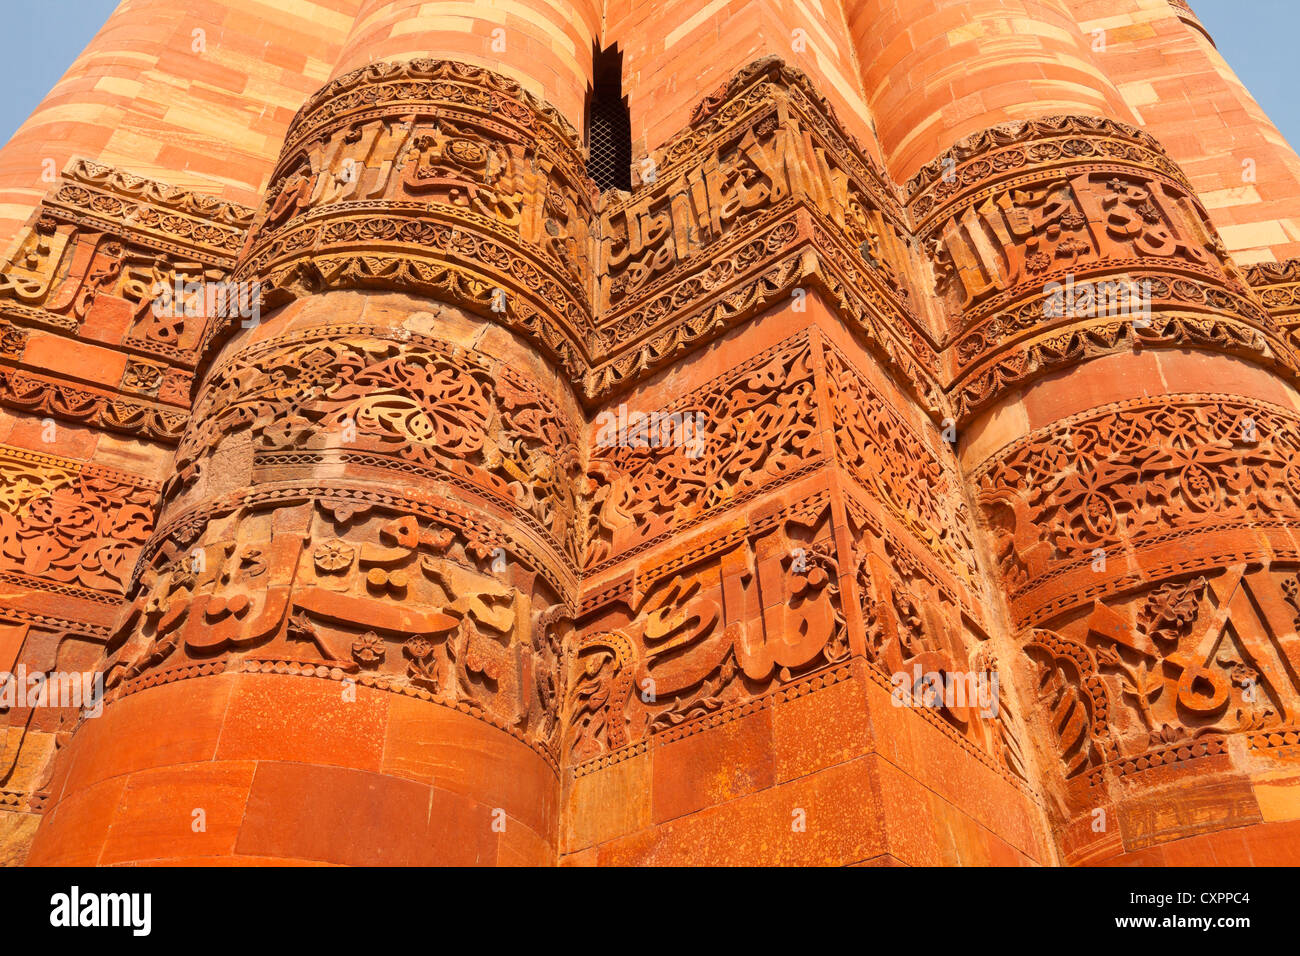 Detail of Qutub Minar, the tallest minaret in the world, Delhi, India Stock Photo